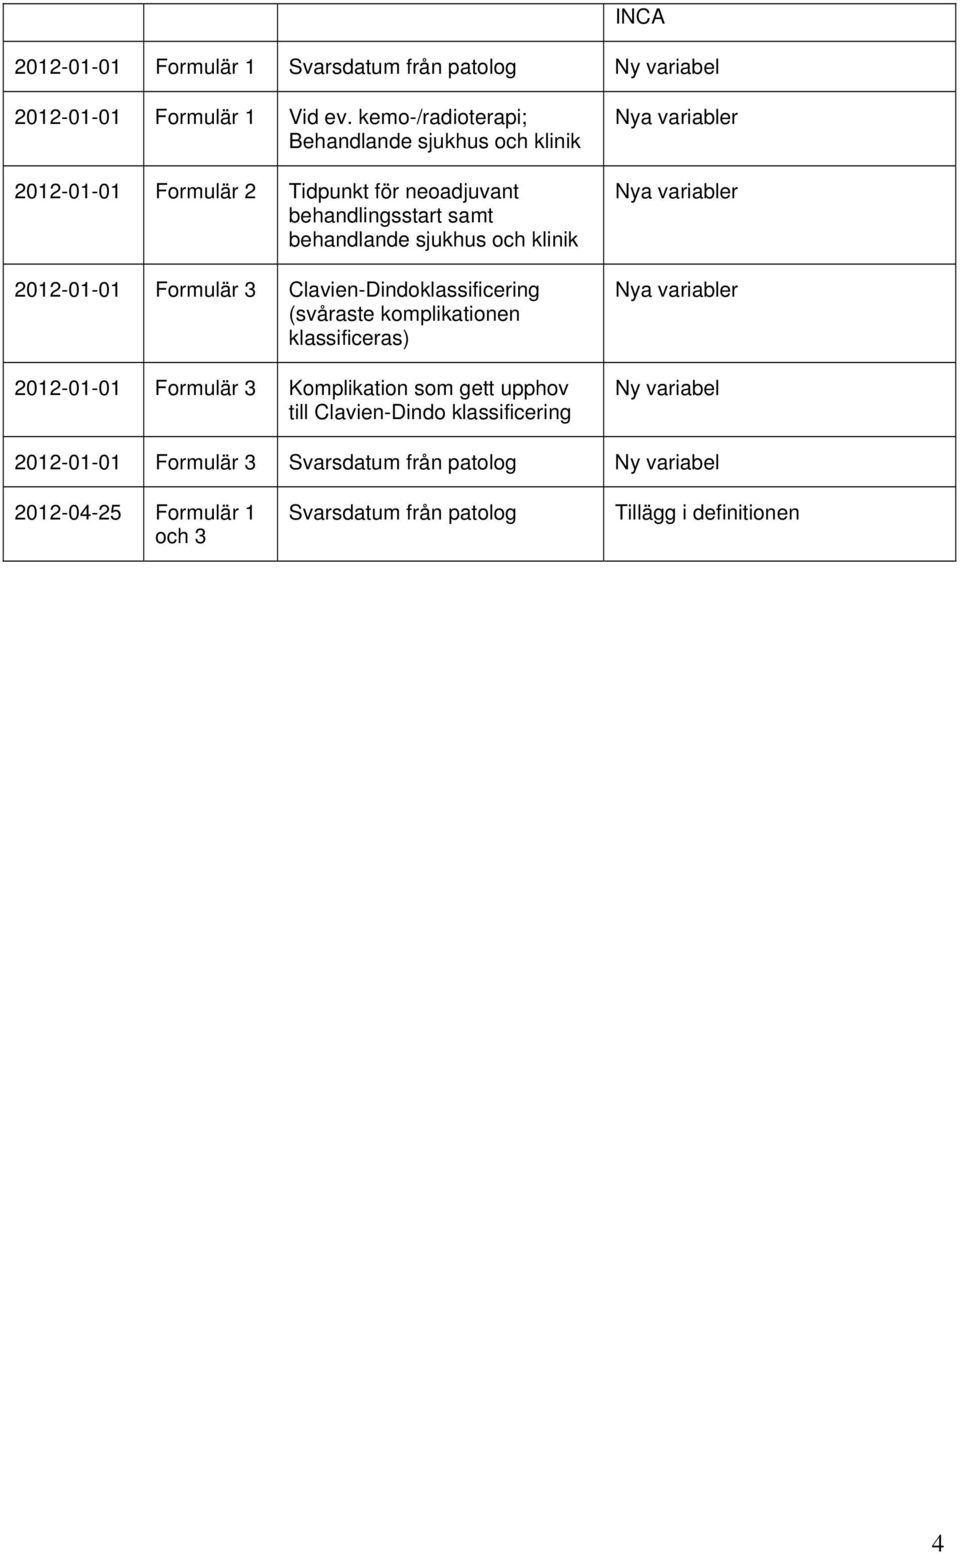 2012-01-01 Formulär 3 Clavien-Dindoklassificering (svåraste komplikationen klassificeras) 2012-01-01 Formulär 3 Komplikation som gett upphov till